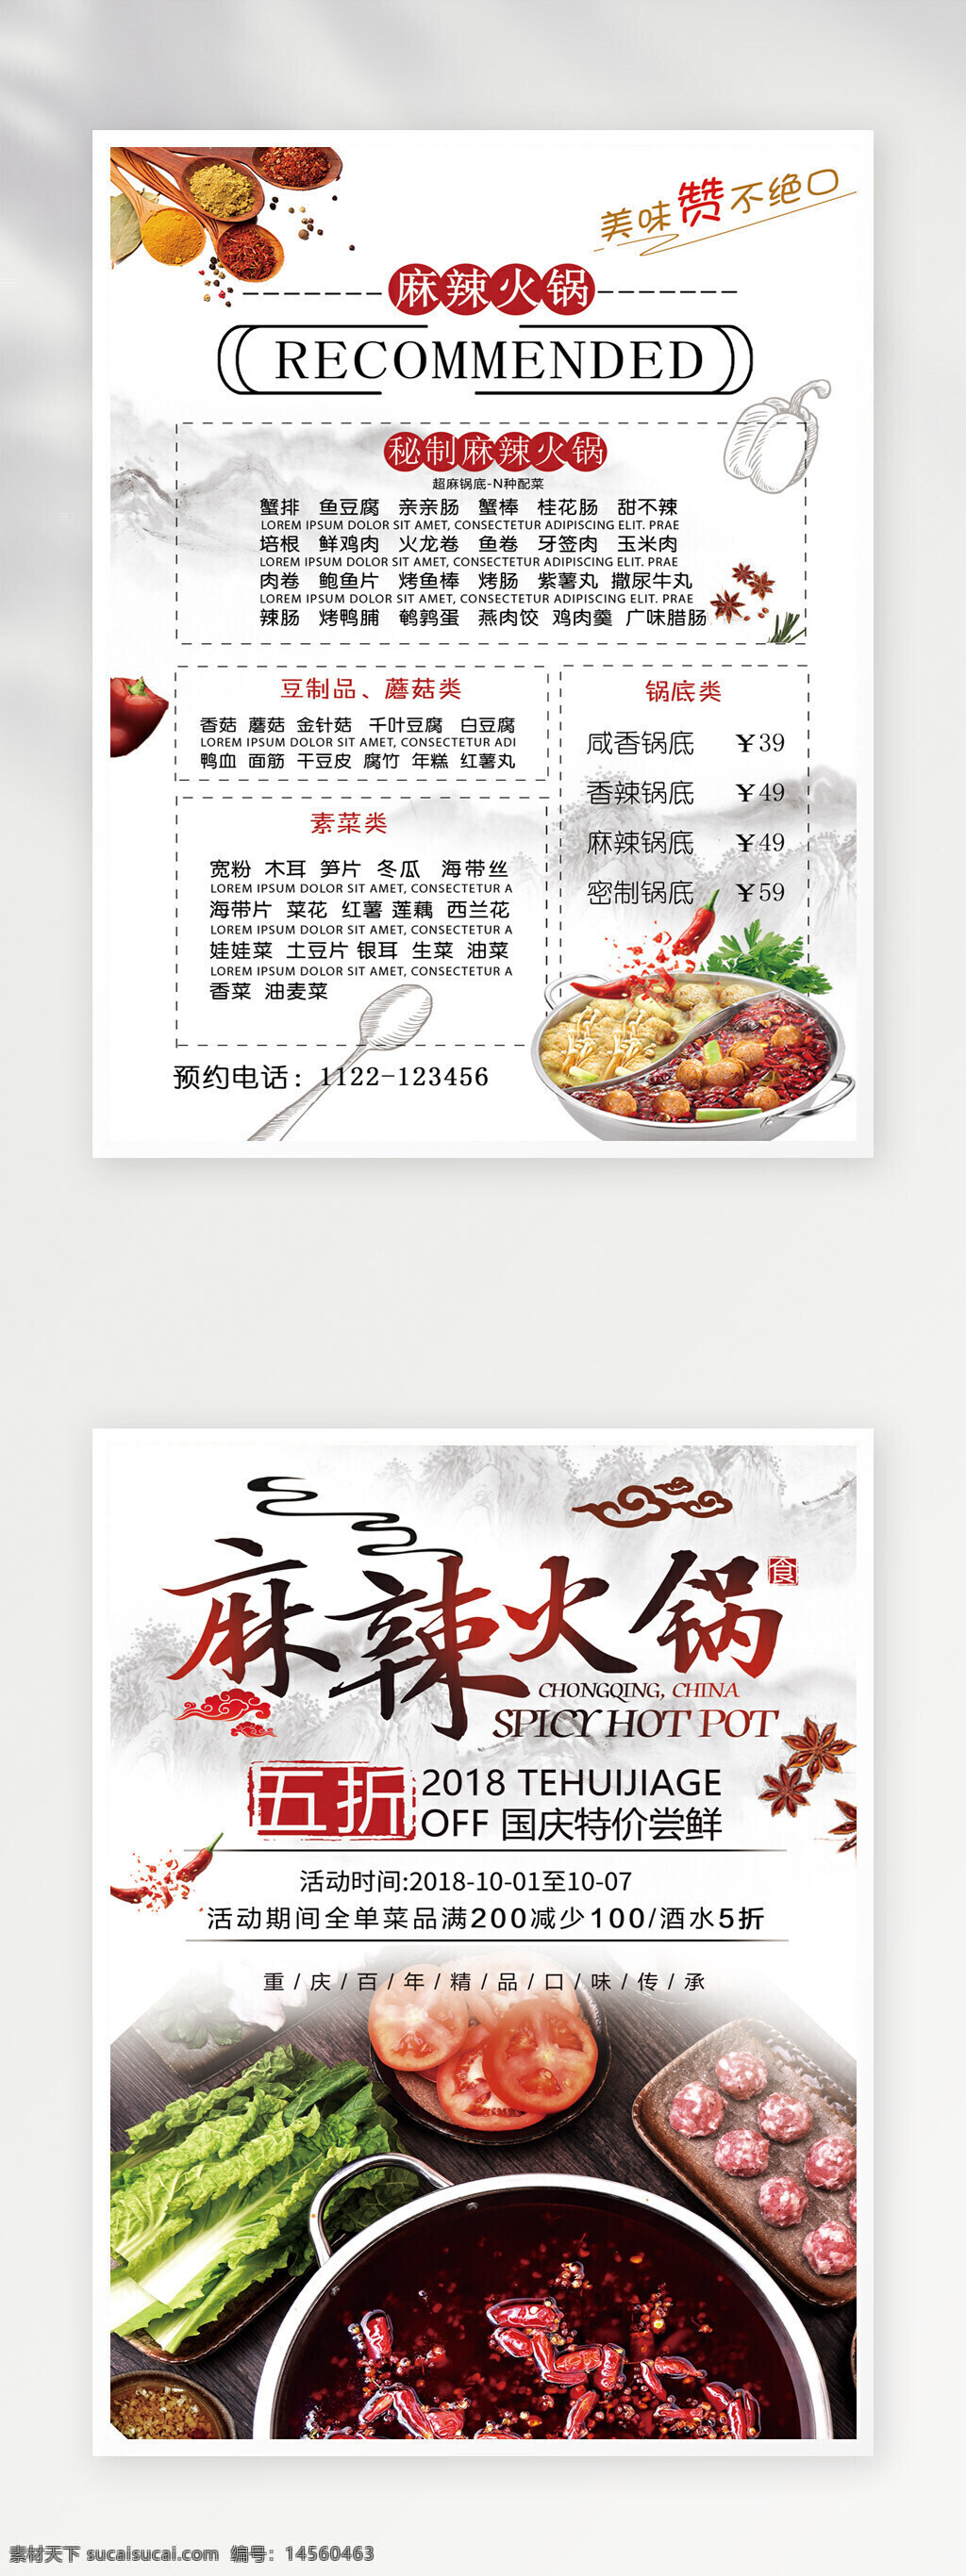 火锅 菜单模板 价目表 菜单菜谱 点餐单 菜谱 菜单设计 菜单 菜单广告 菜谱设计